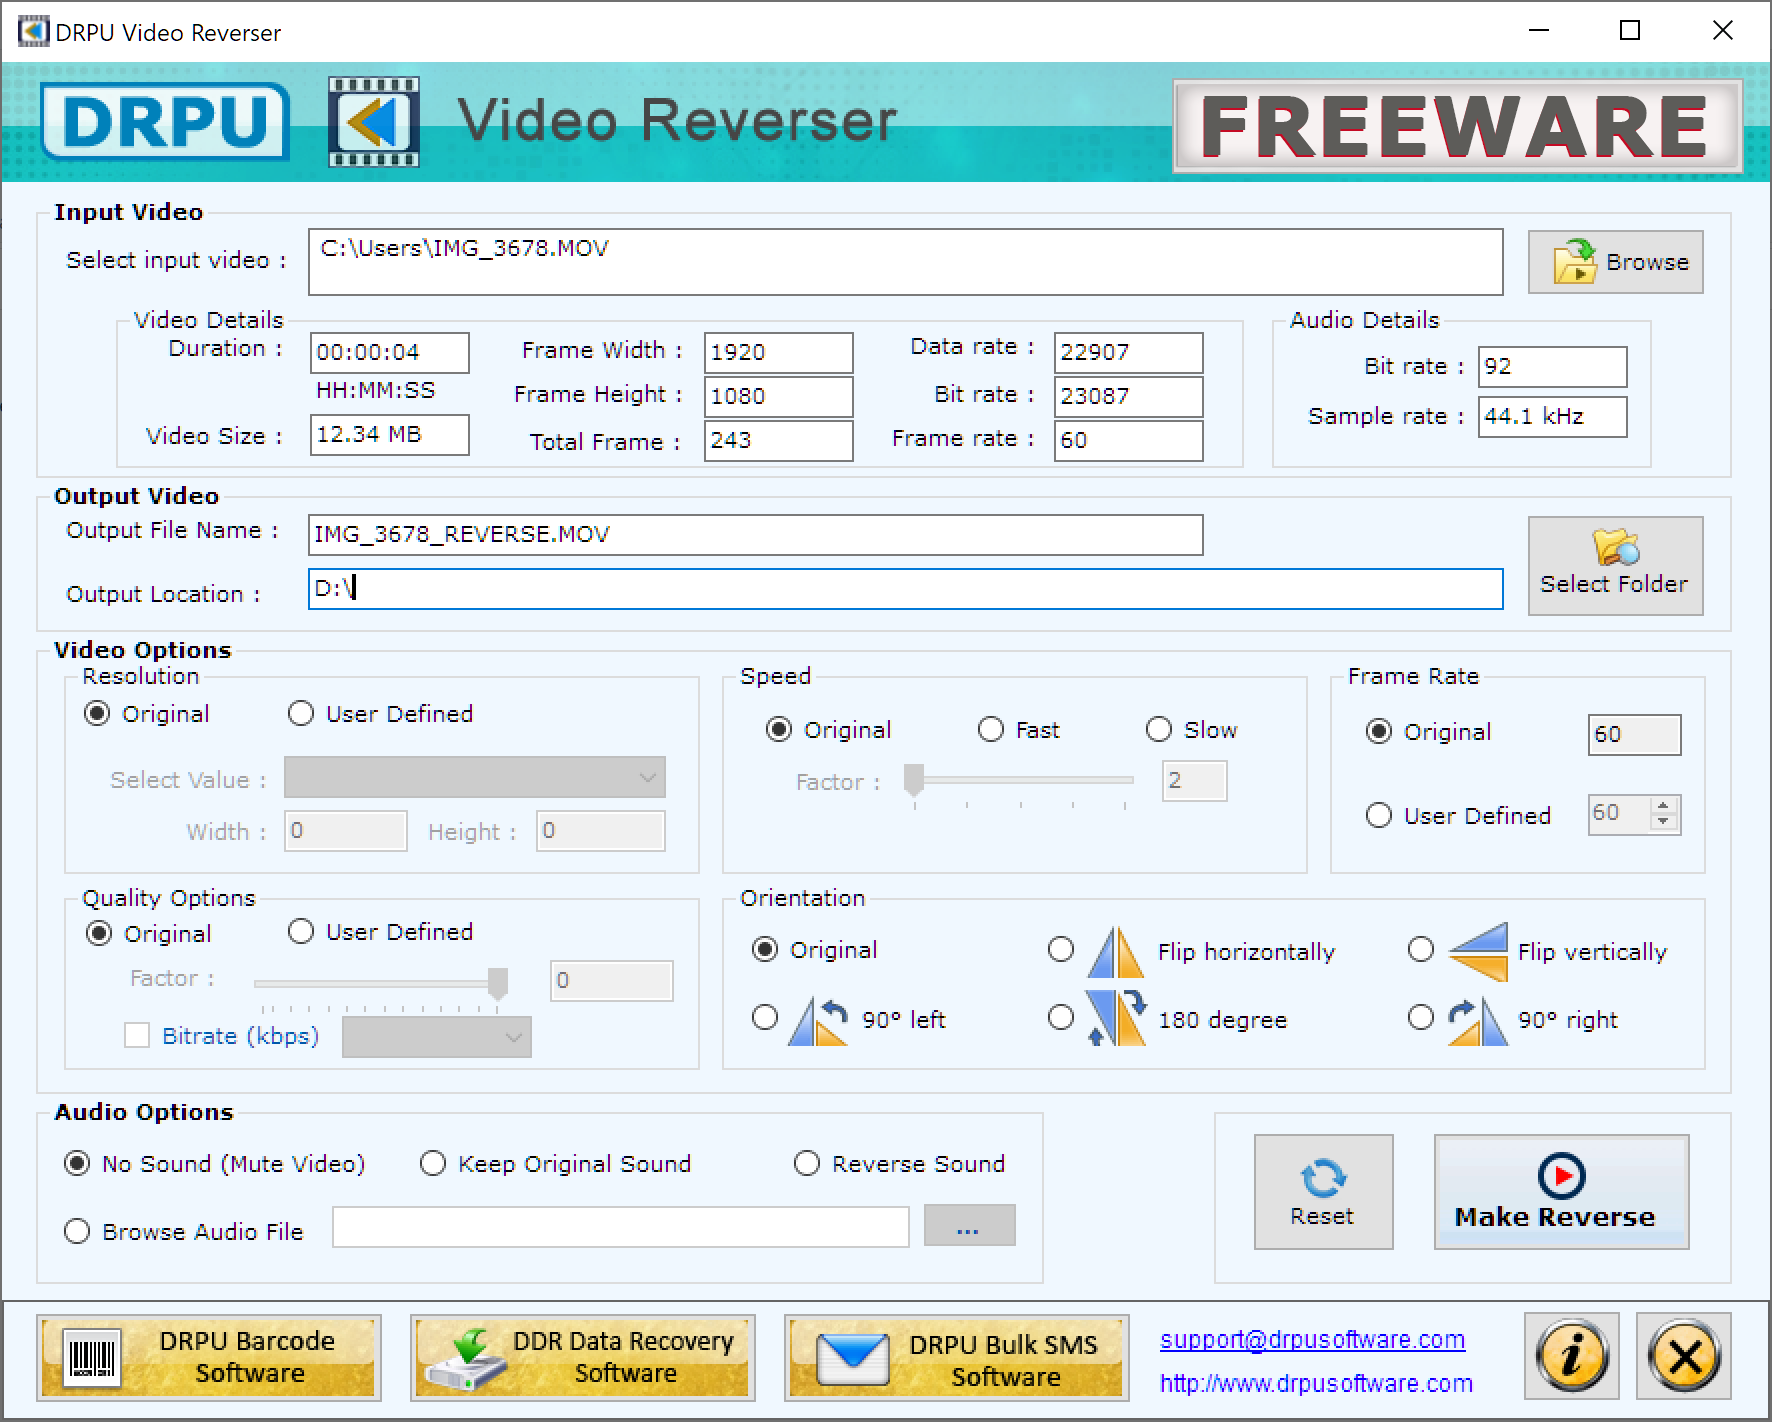 DRPU Video Reverser Freeware Software screenshot